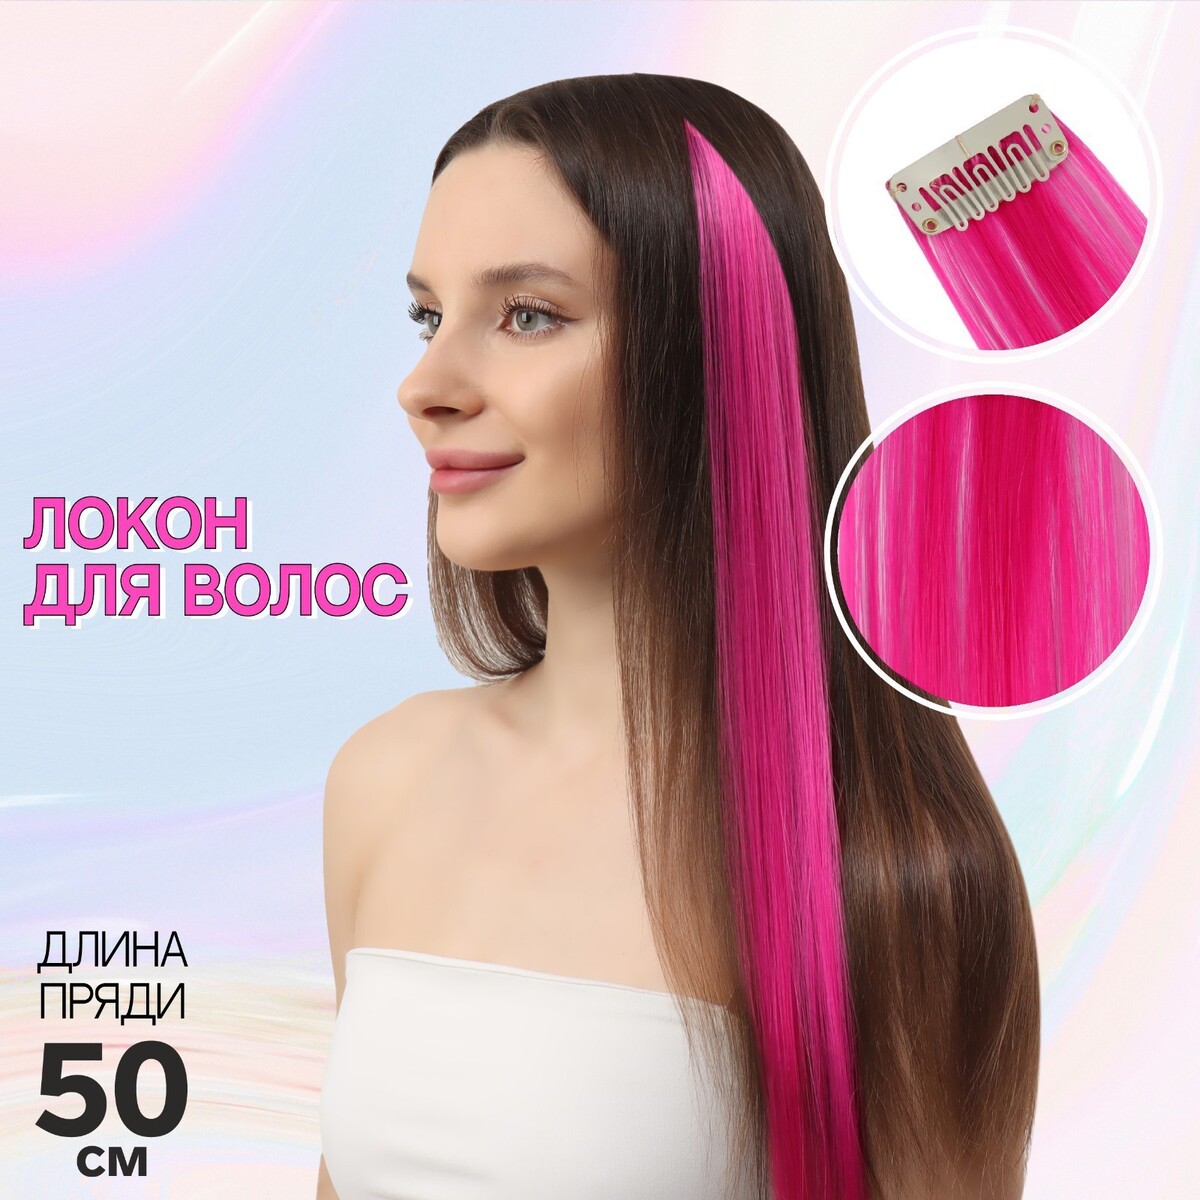 Локон накладной, прямой волос, на заколке, 50 см, 5 гр, цвет розовый локон накладной прямой волос на заколке 50 см 5 гр бирюзовый